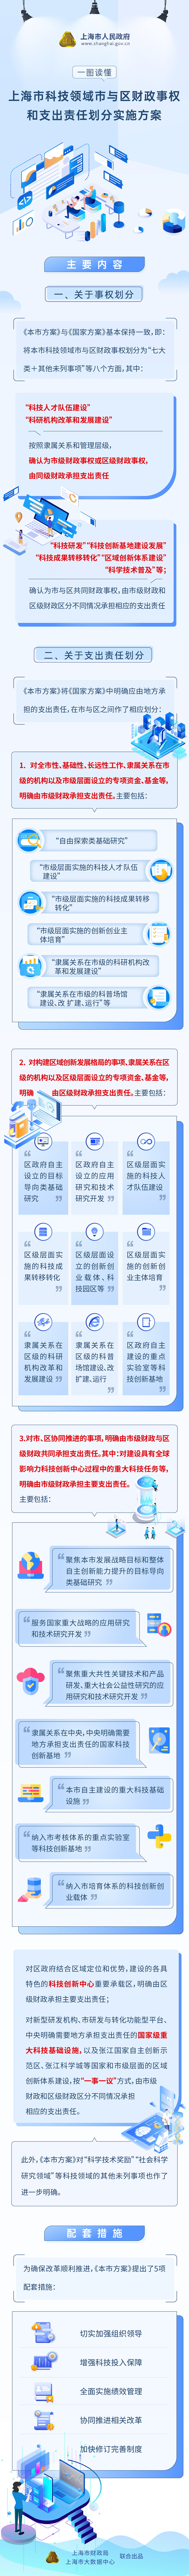 《上海市科技领域市与区财政事权和支出责任划分实施方案》政策图解.jpg